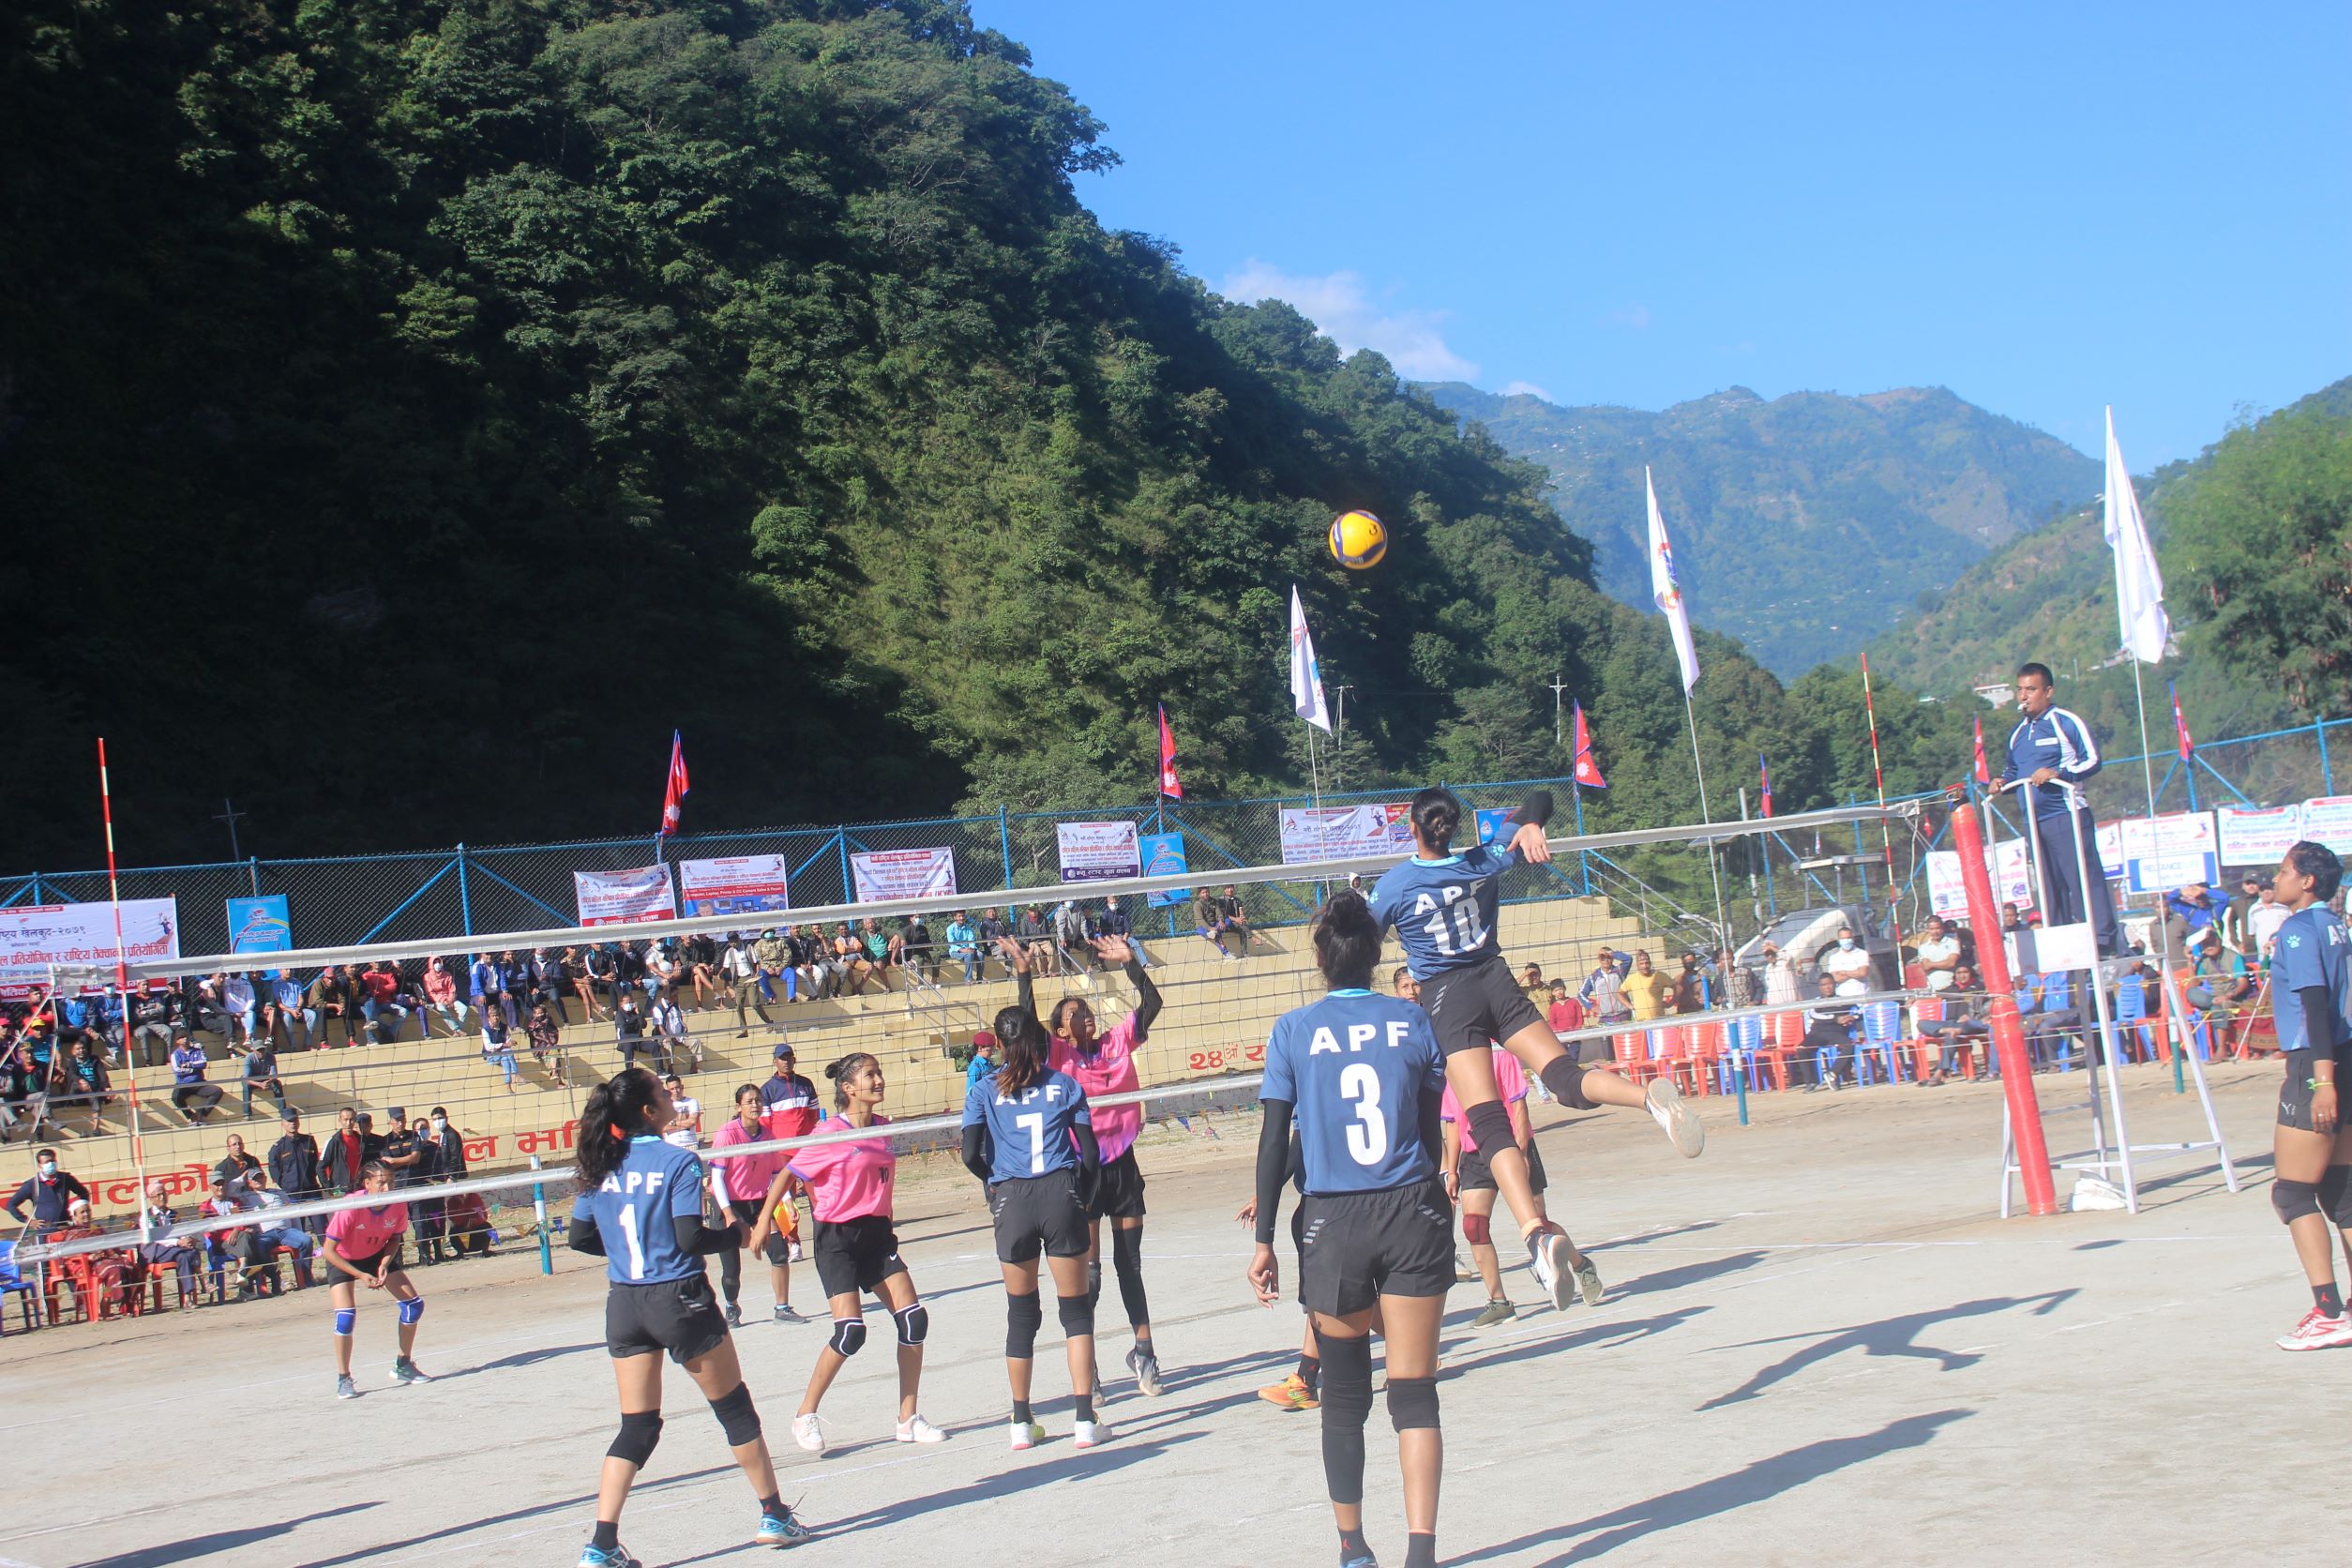 नवौँ राष्ट्रिय खेलकुदः भलिबलमा एपीएफ र पुलिसको विजयी सुरुवात